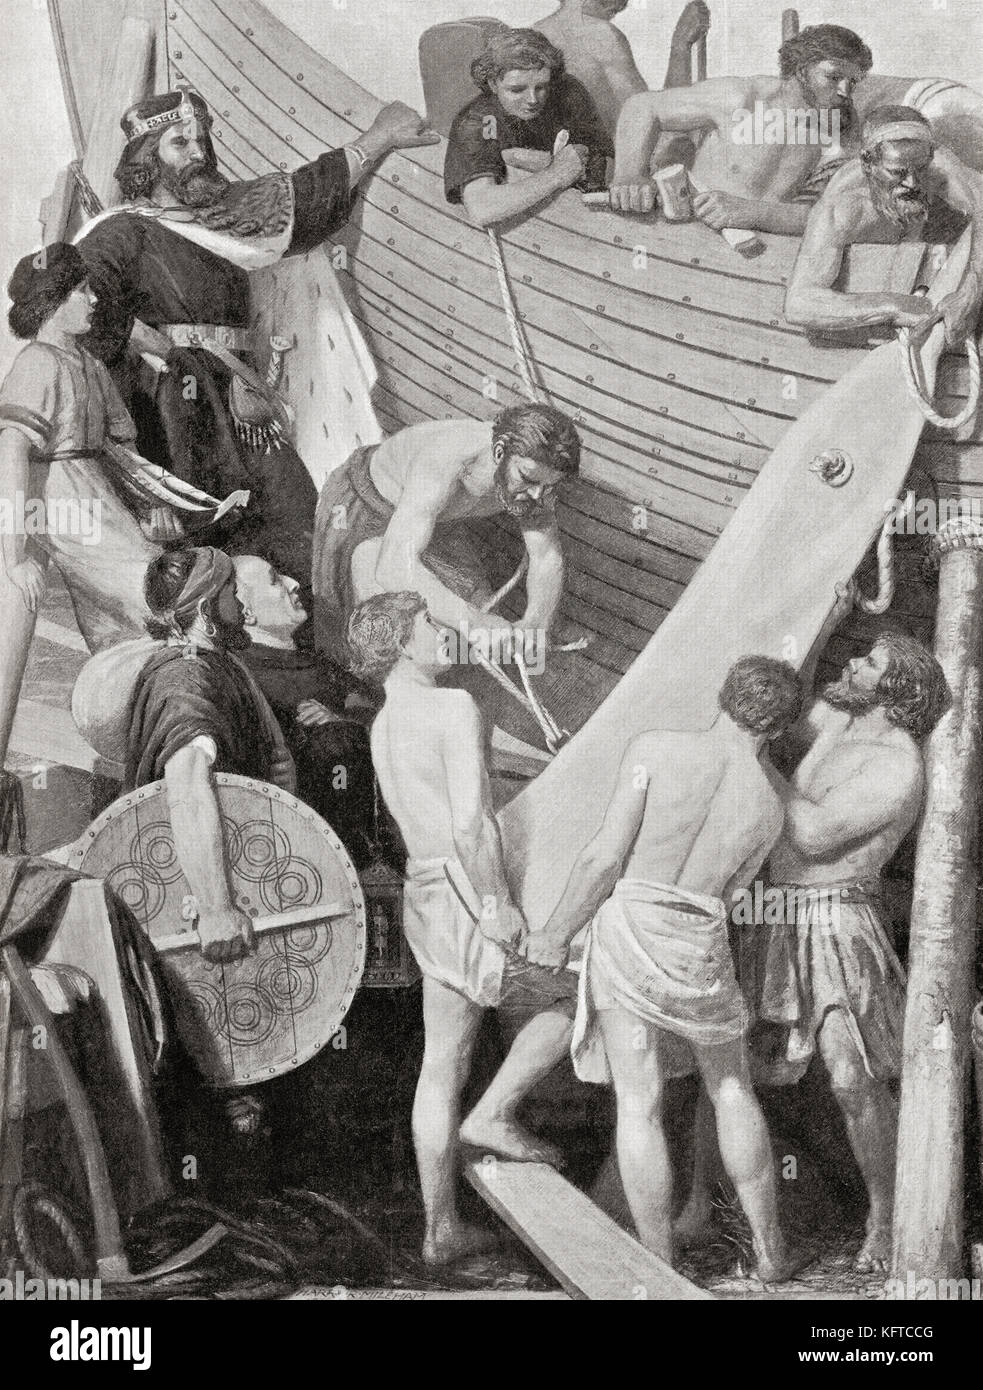 La reconstruction de la flotte du roi Alfred, c. 882. Alfred le Grand, 849 – 899. Roi de Wessex. De l'Histoire des Nations de Hutchinson, publié en 1915. Banque D'Images